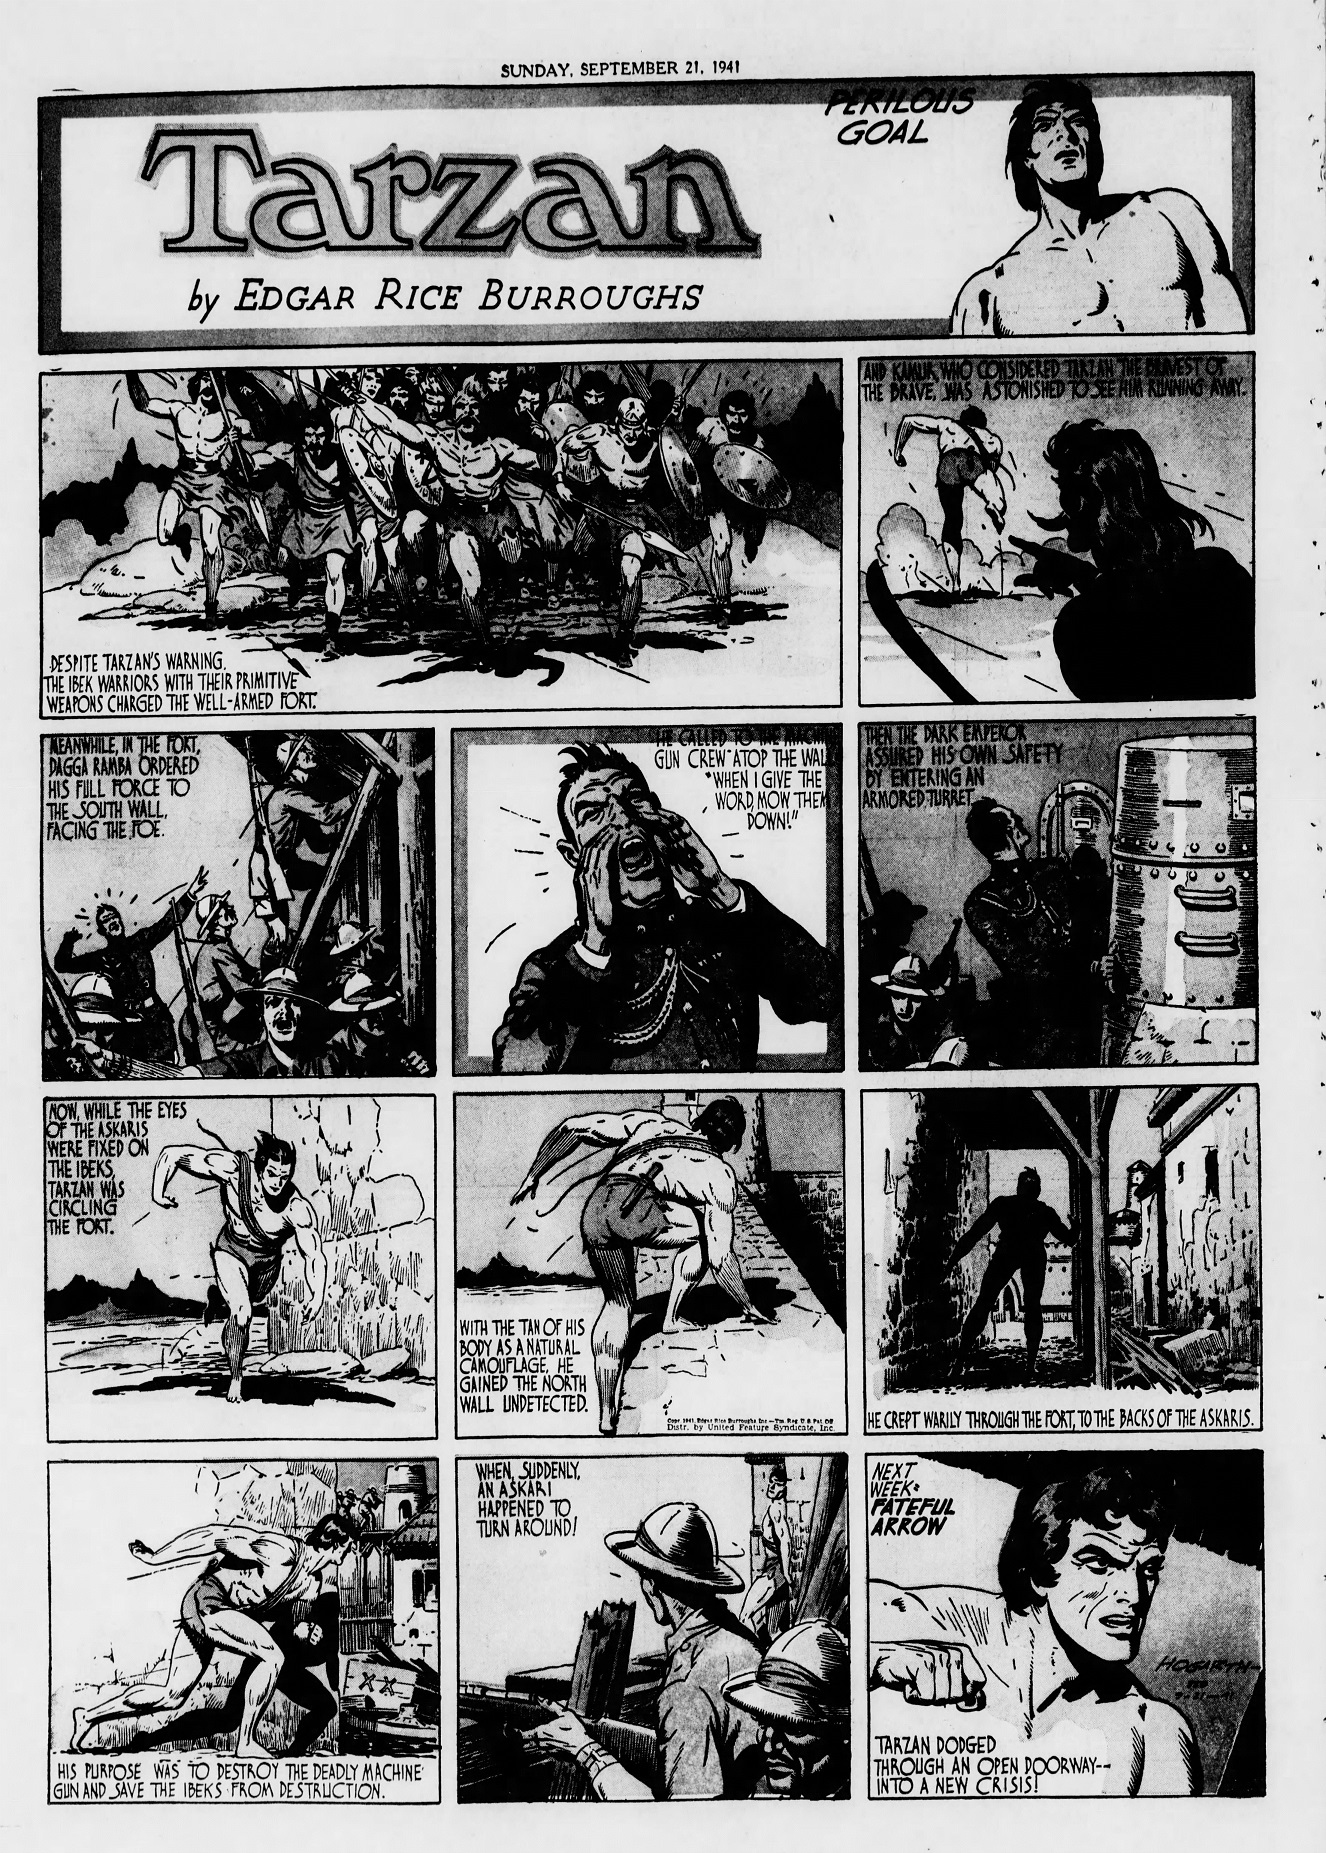 The_Brooklyn_Daily_Eagle_Sun__Sep_21__1941_(10).jpg